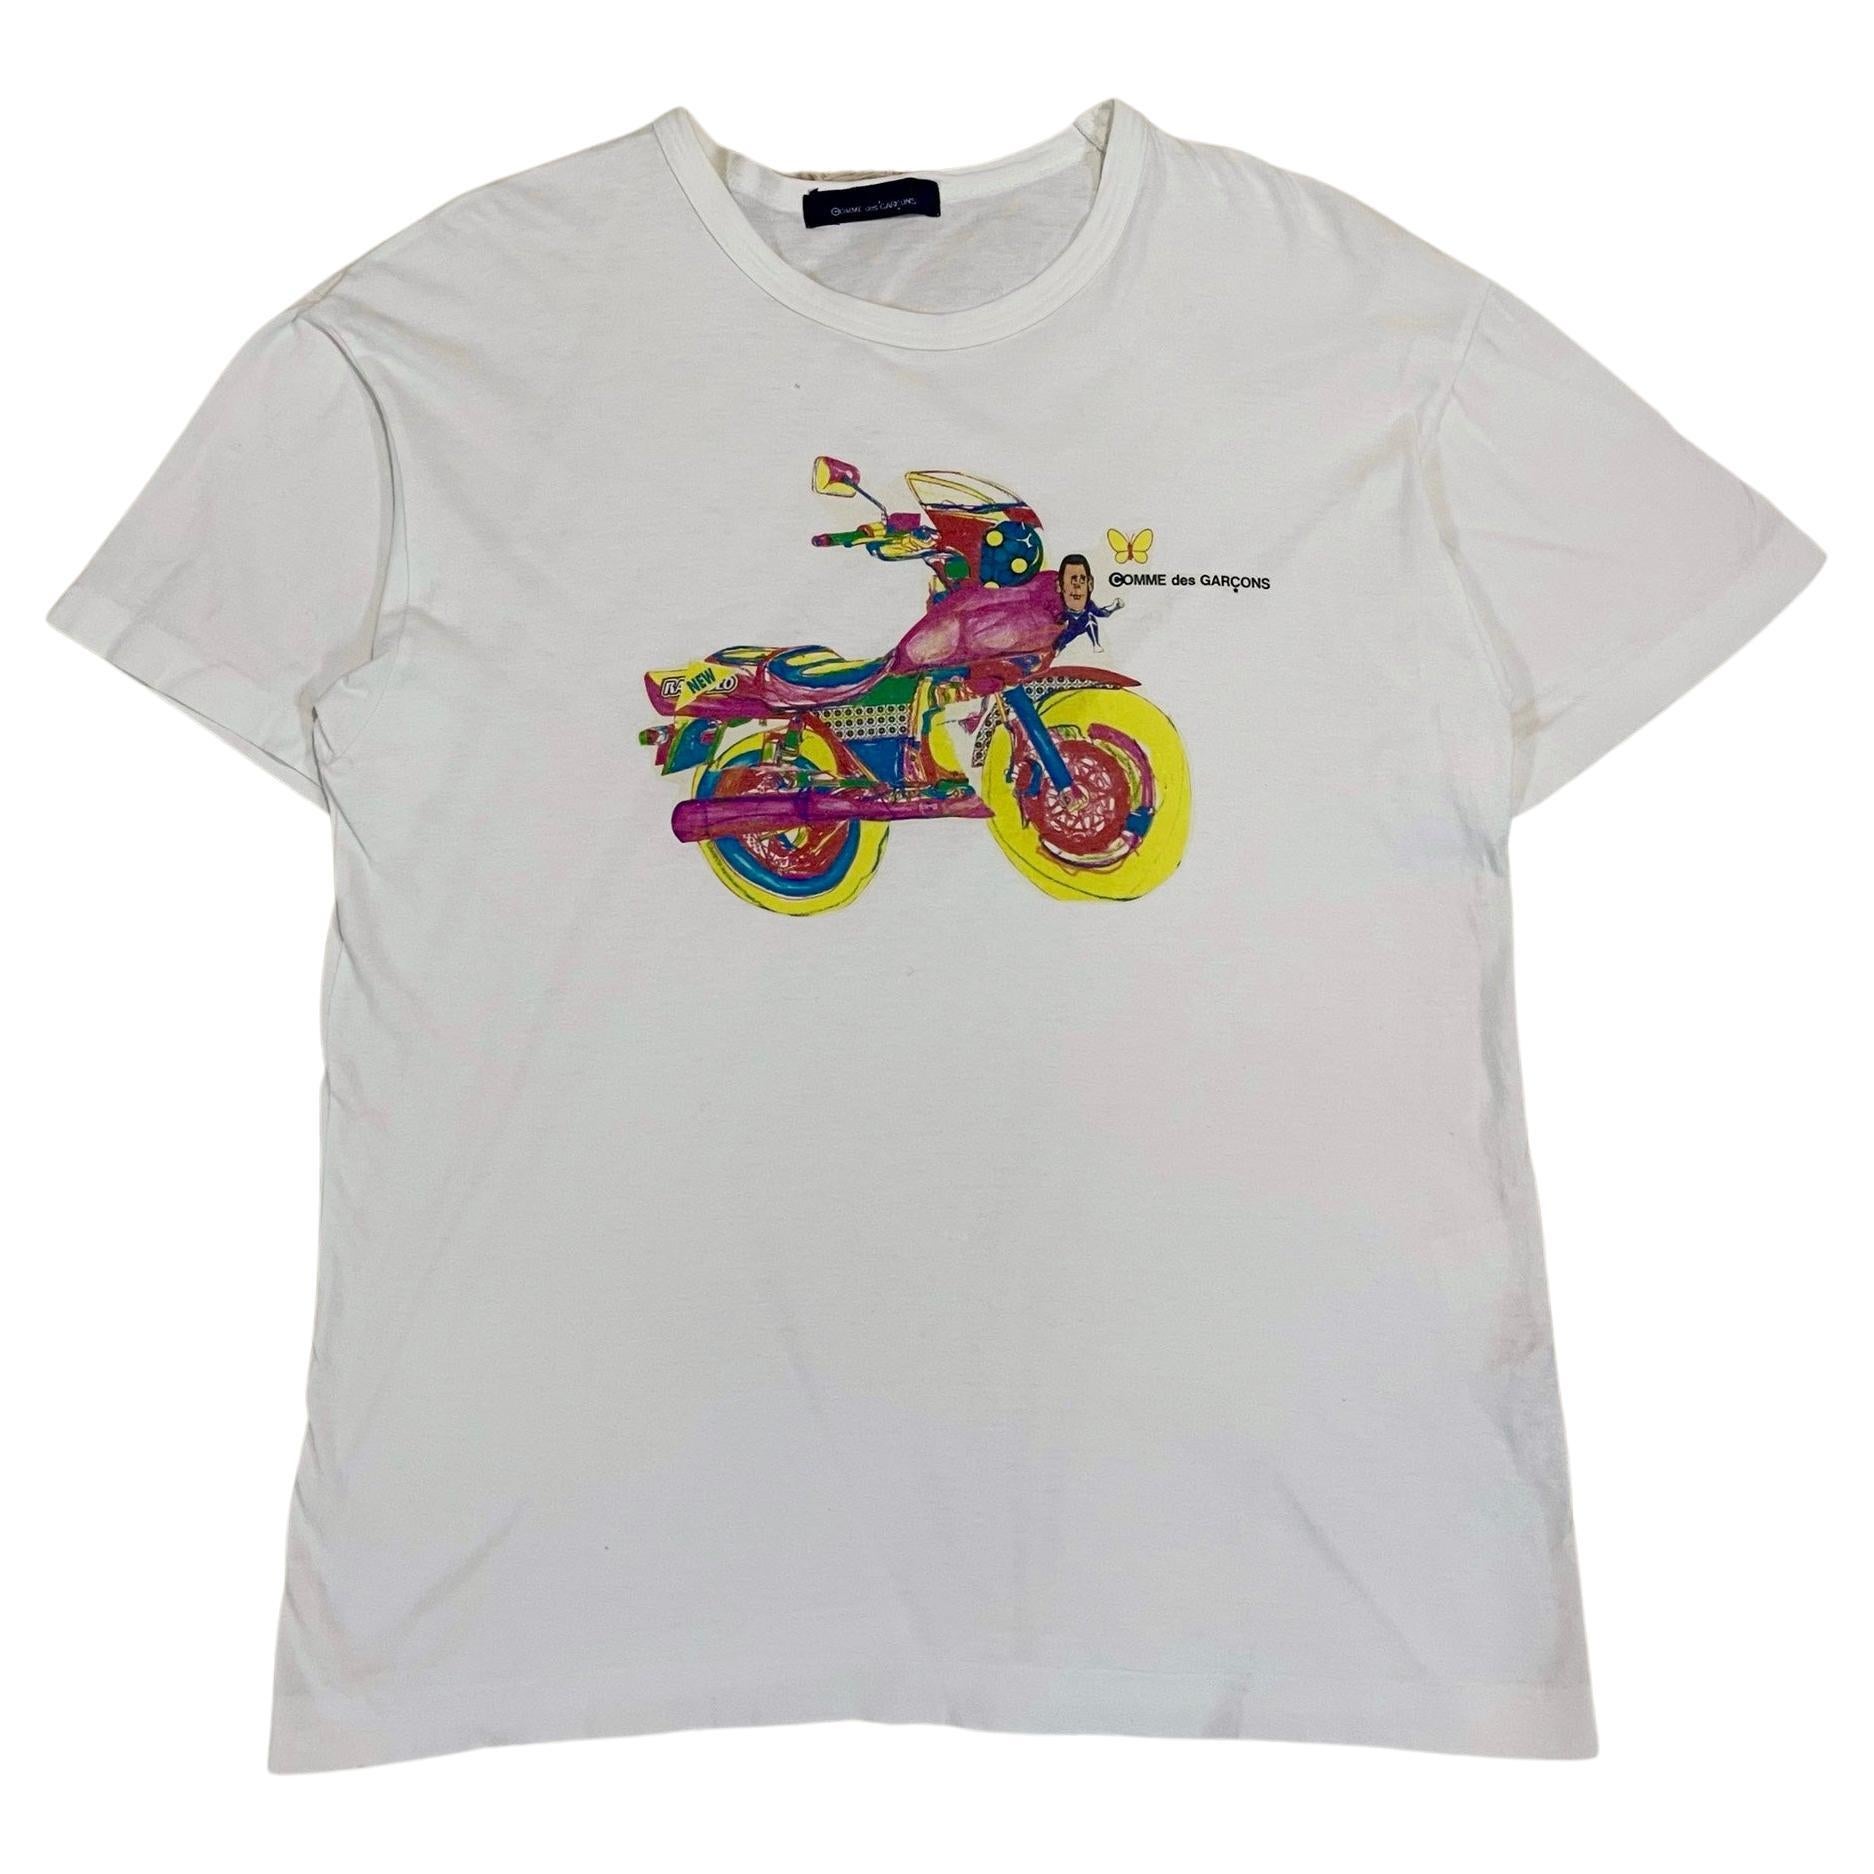 Comme Des Garçons - T-shirt « Motocycle » vintage S/S2000